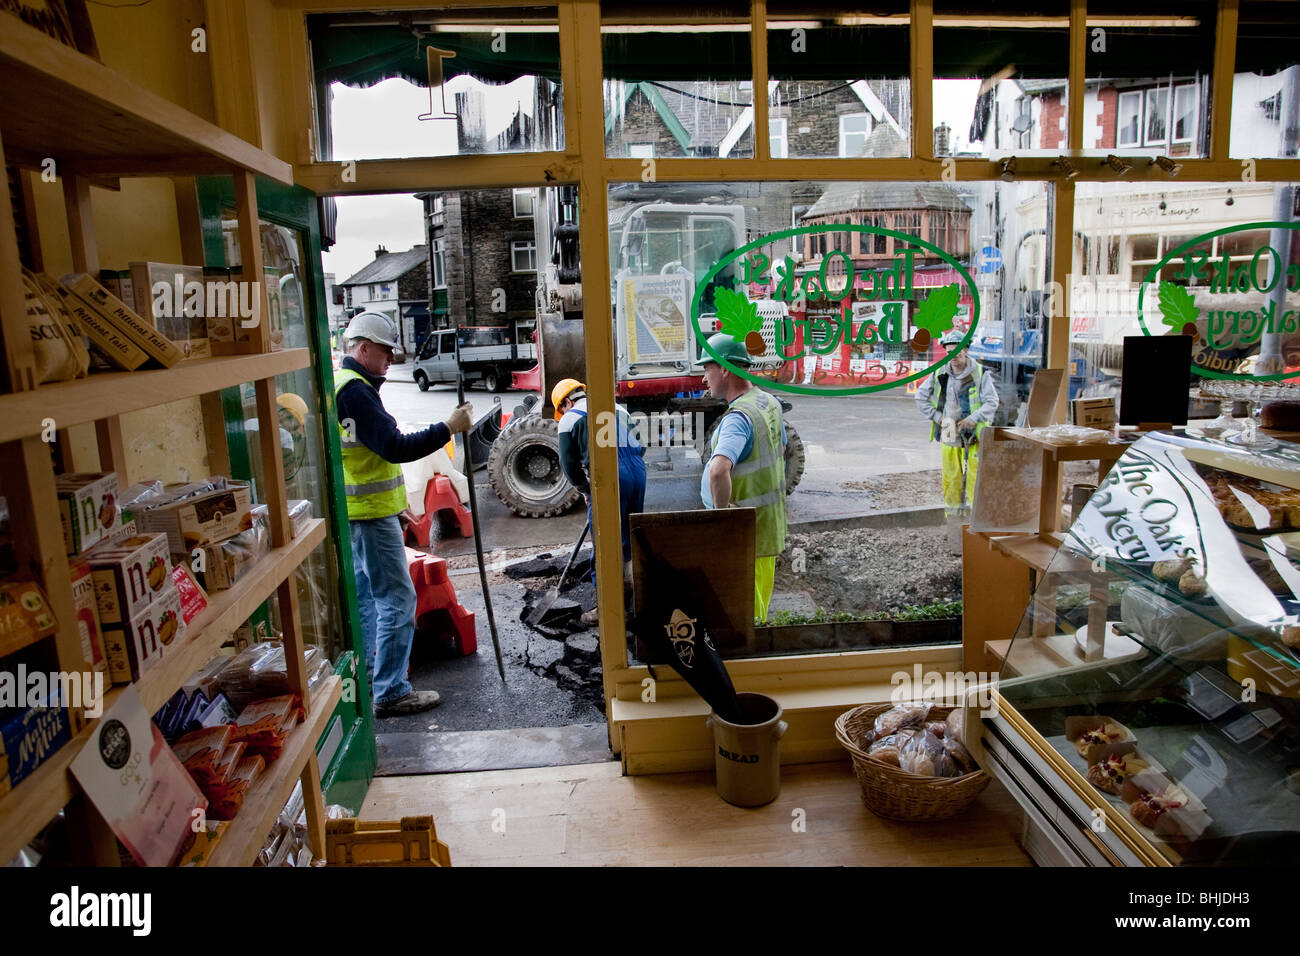 Geschäft funktioniert wie gewohnt - Straße außerhalb shop Stockfoto